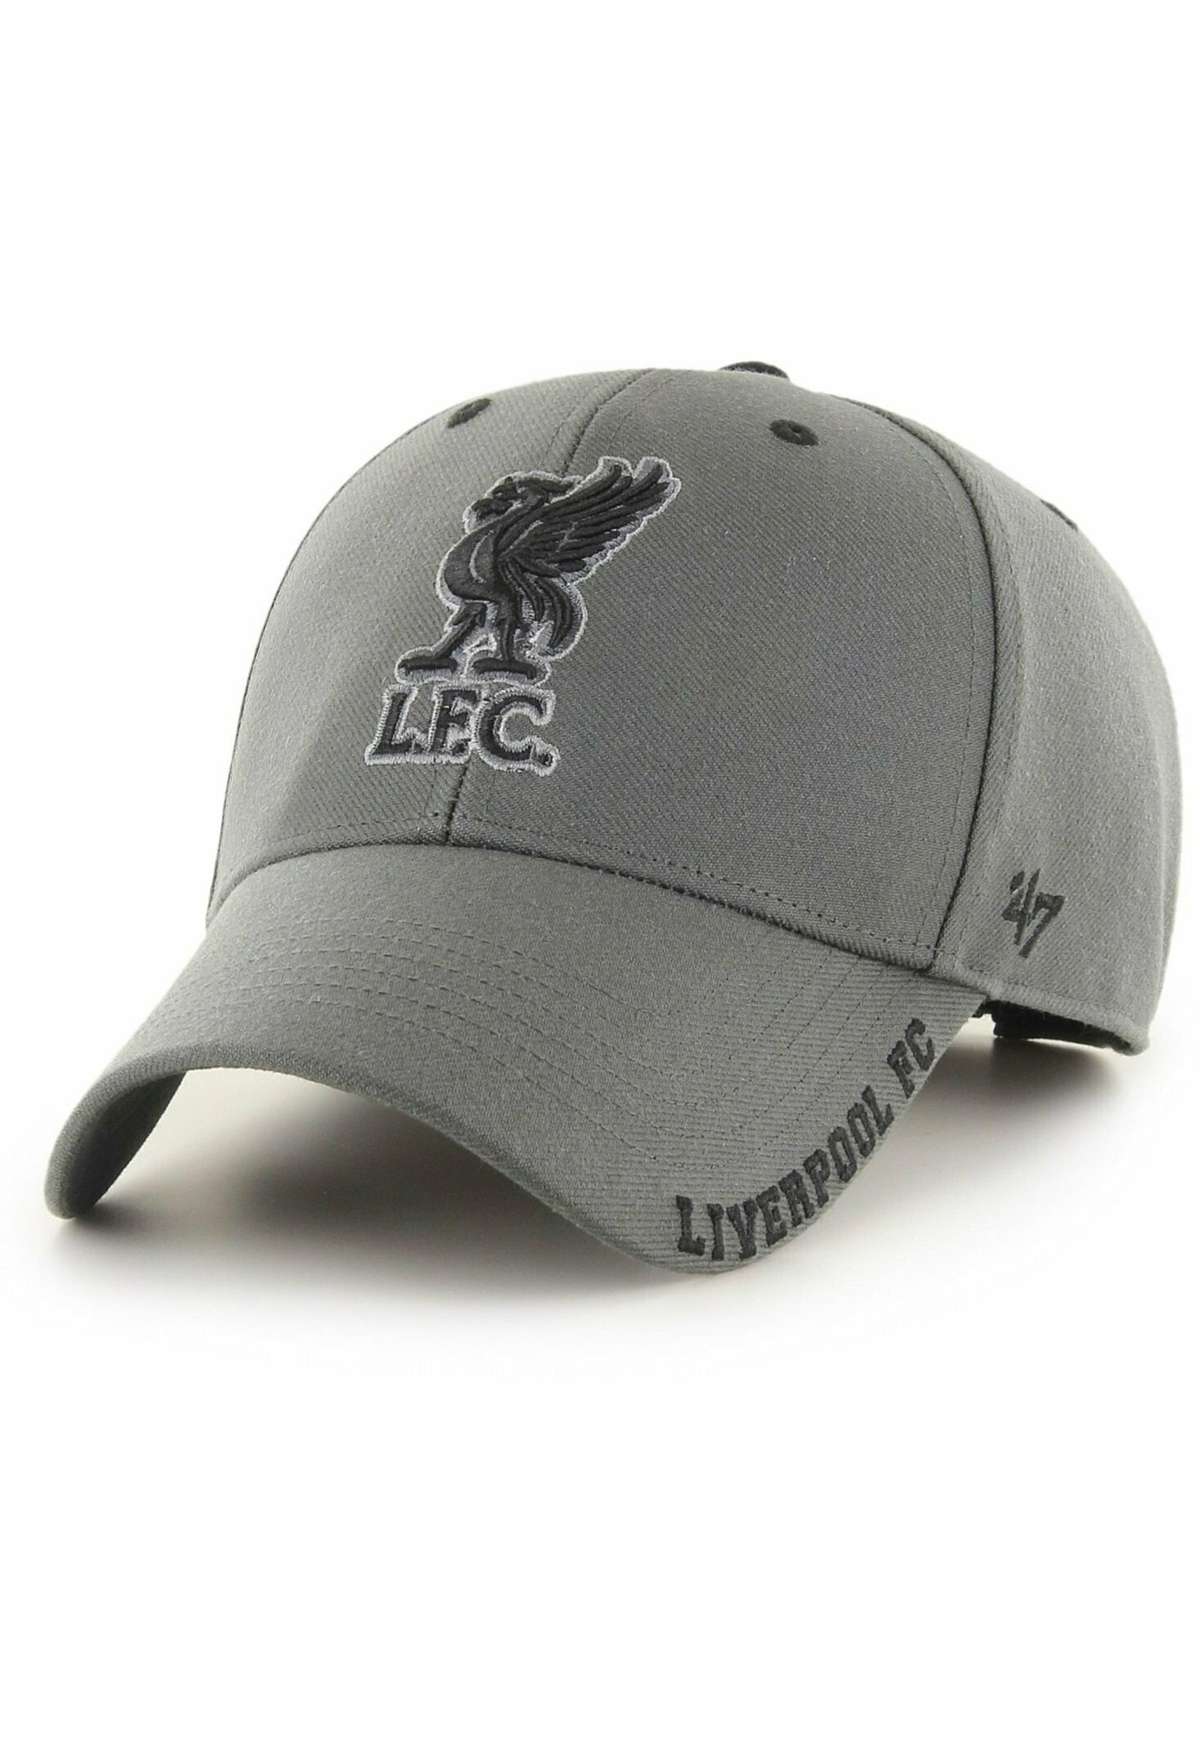 Шляпа DEFROST FC LIVERPOOL